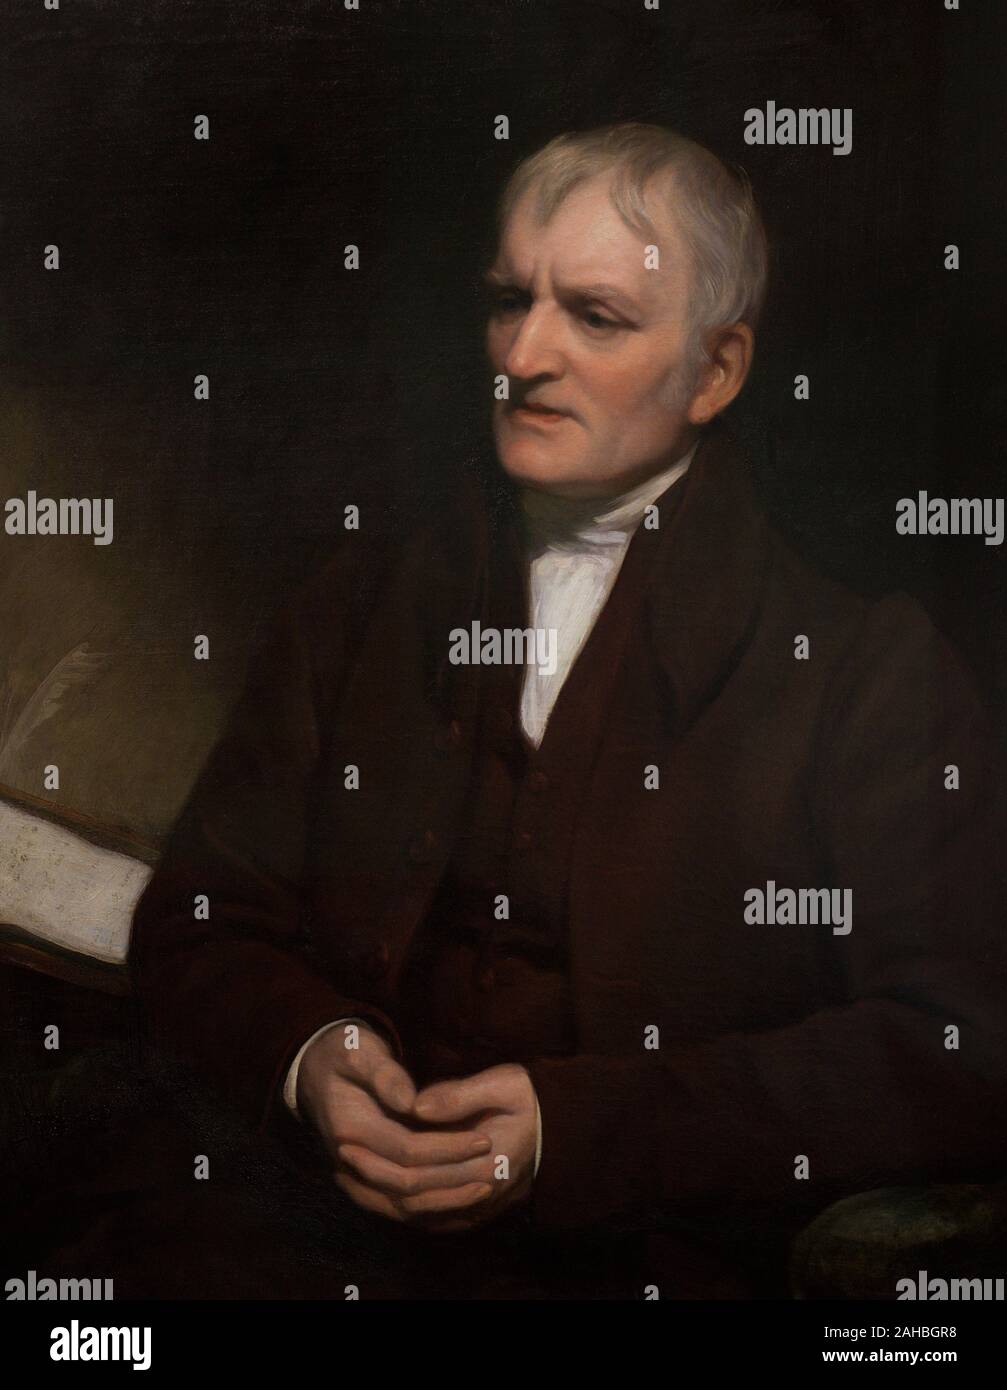 John Dalton (1766-1844). Naturalista, químico, Matemático y meteorólogo Británico. Retrato realizado por Thomas Phillips (1770-1845). Oleo sobre lienzo y fechado, firmado En 1835. Natinal Portrait Gallery. Londres. Inglaterra. Stockfoto